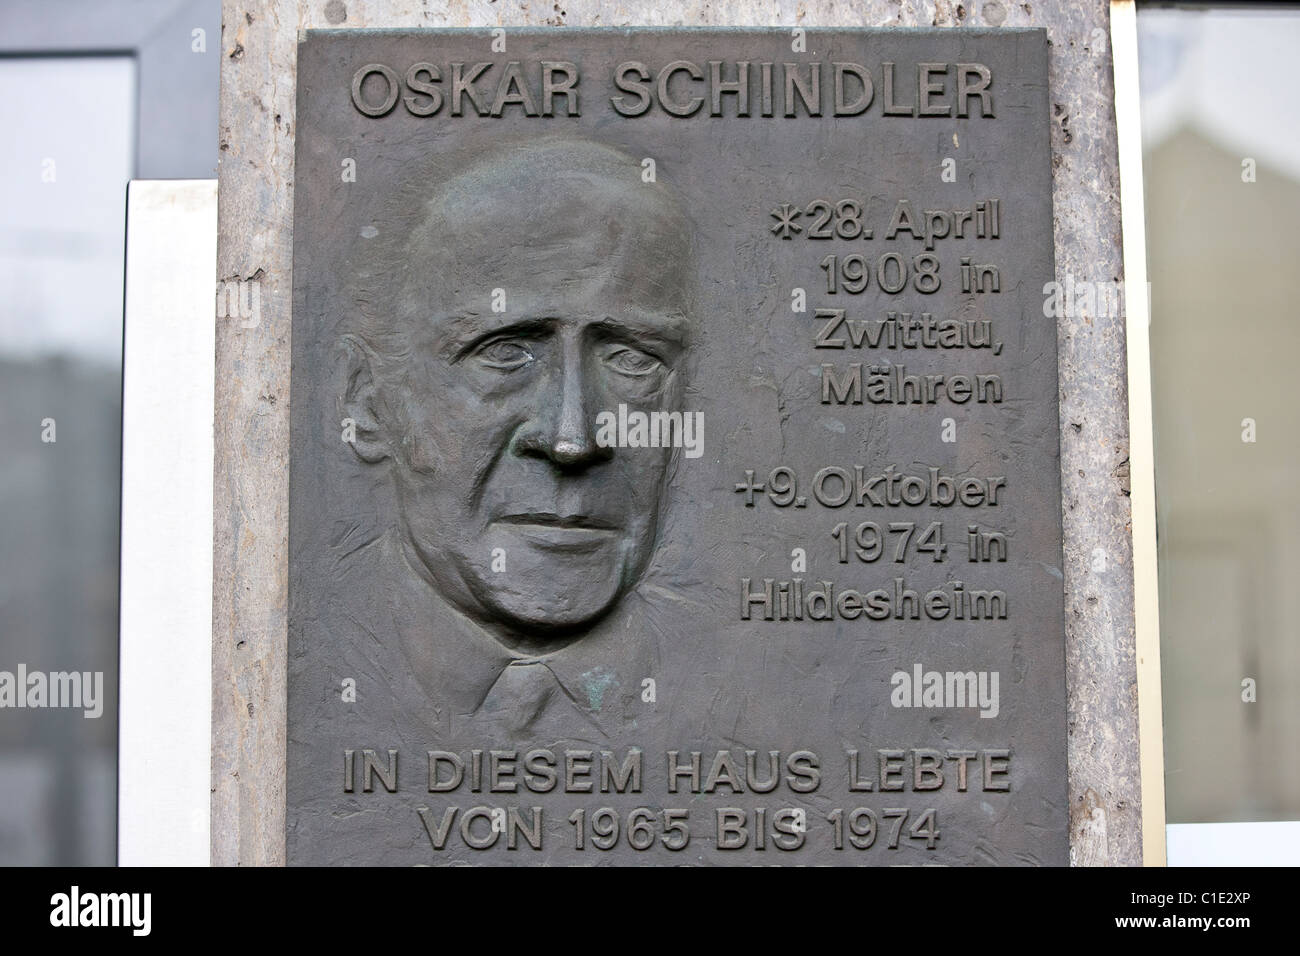 Detail-Gedenktafel in der Residenz des Oskar Schindler in Frankfurt A. M. zwischen 1965 und 1974. Stockfoto